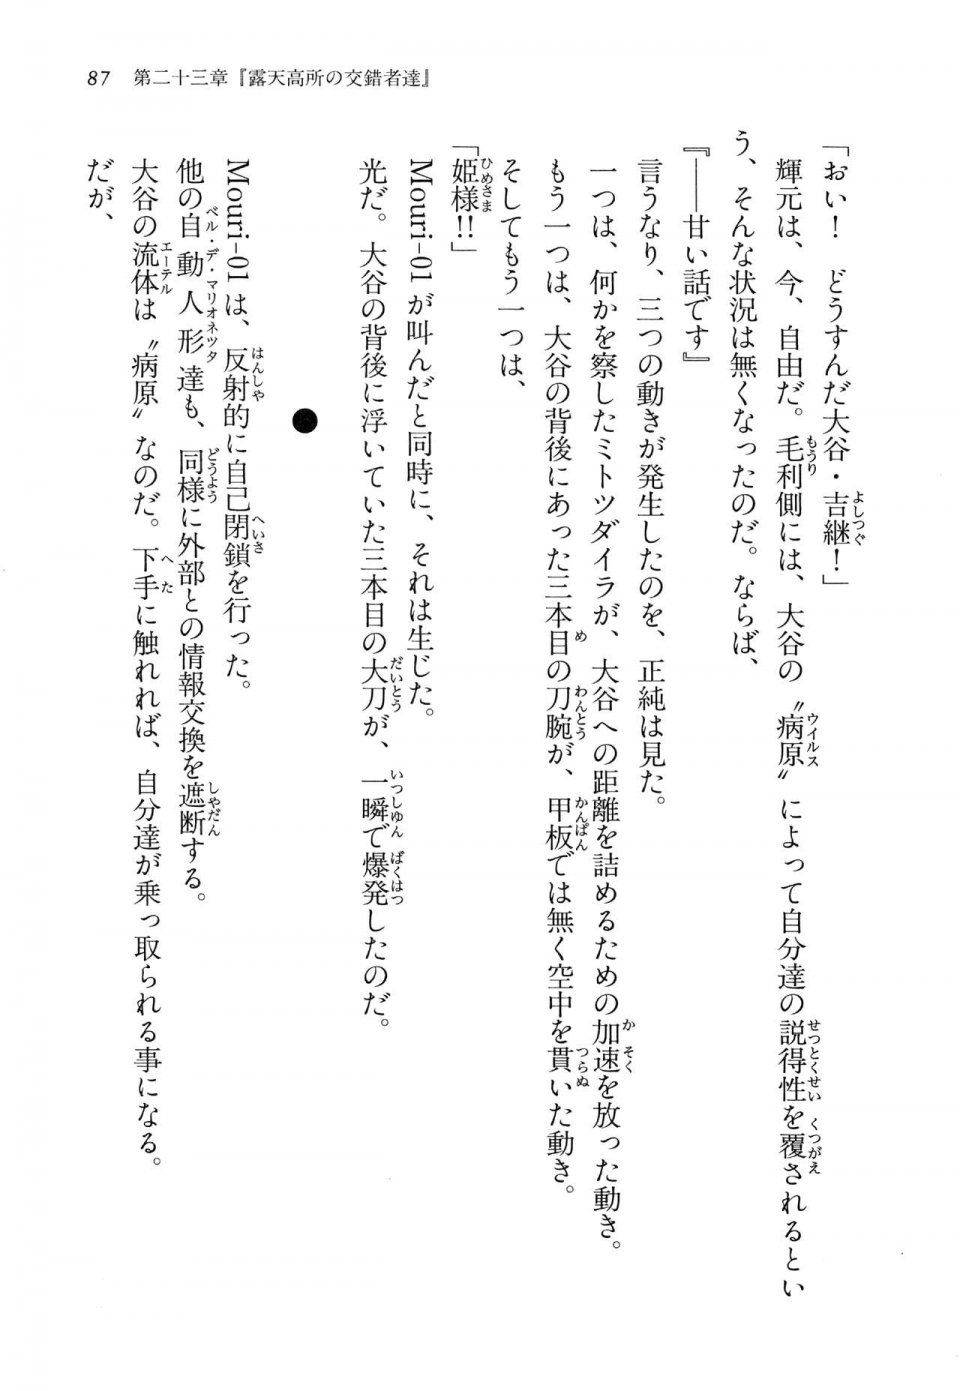 Kyoukai Senjou no Horizon LN Vol 14(6B) - Photo #87